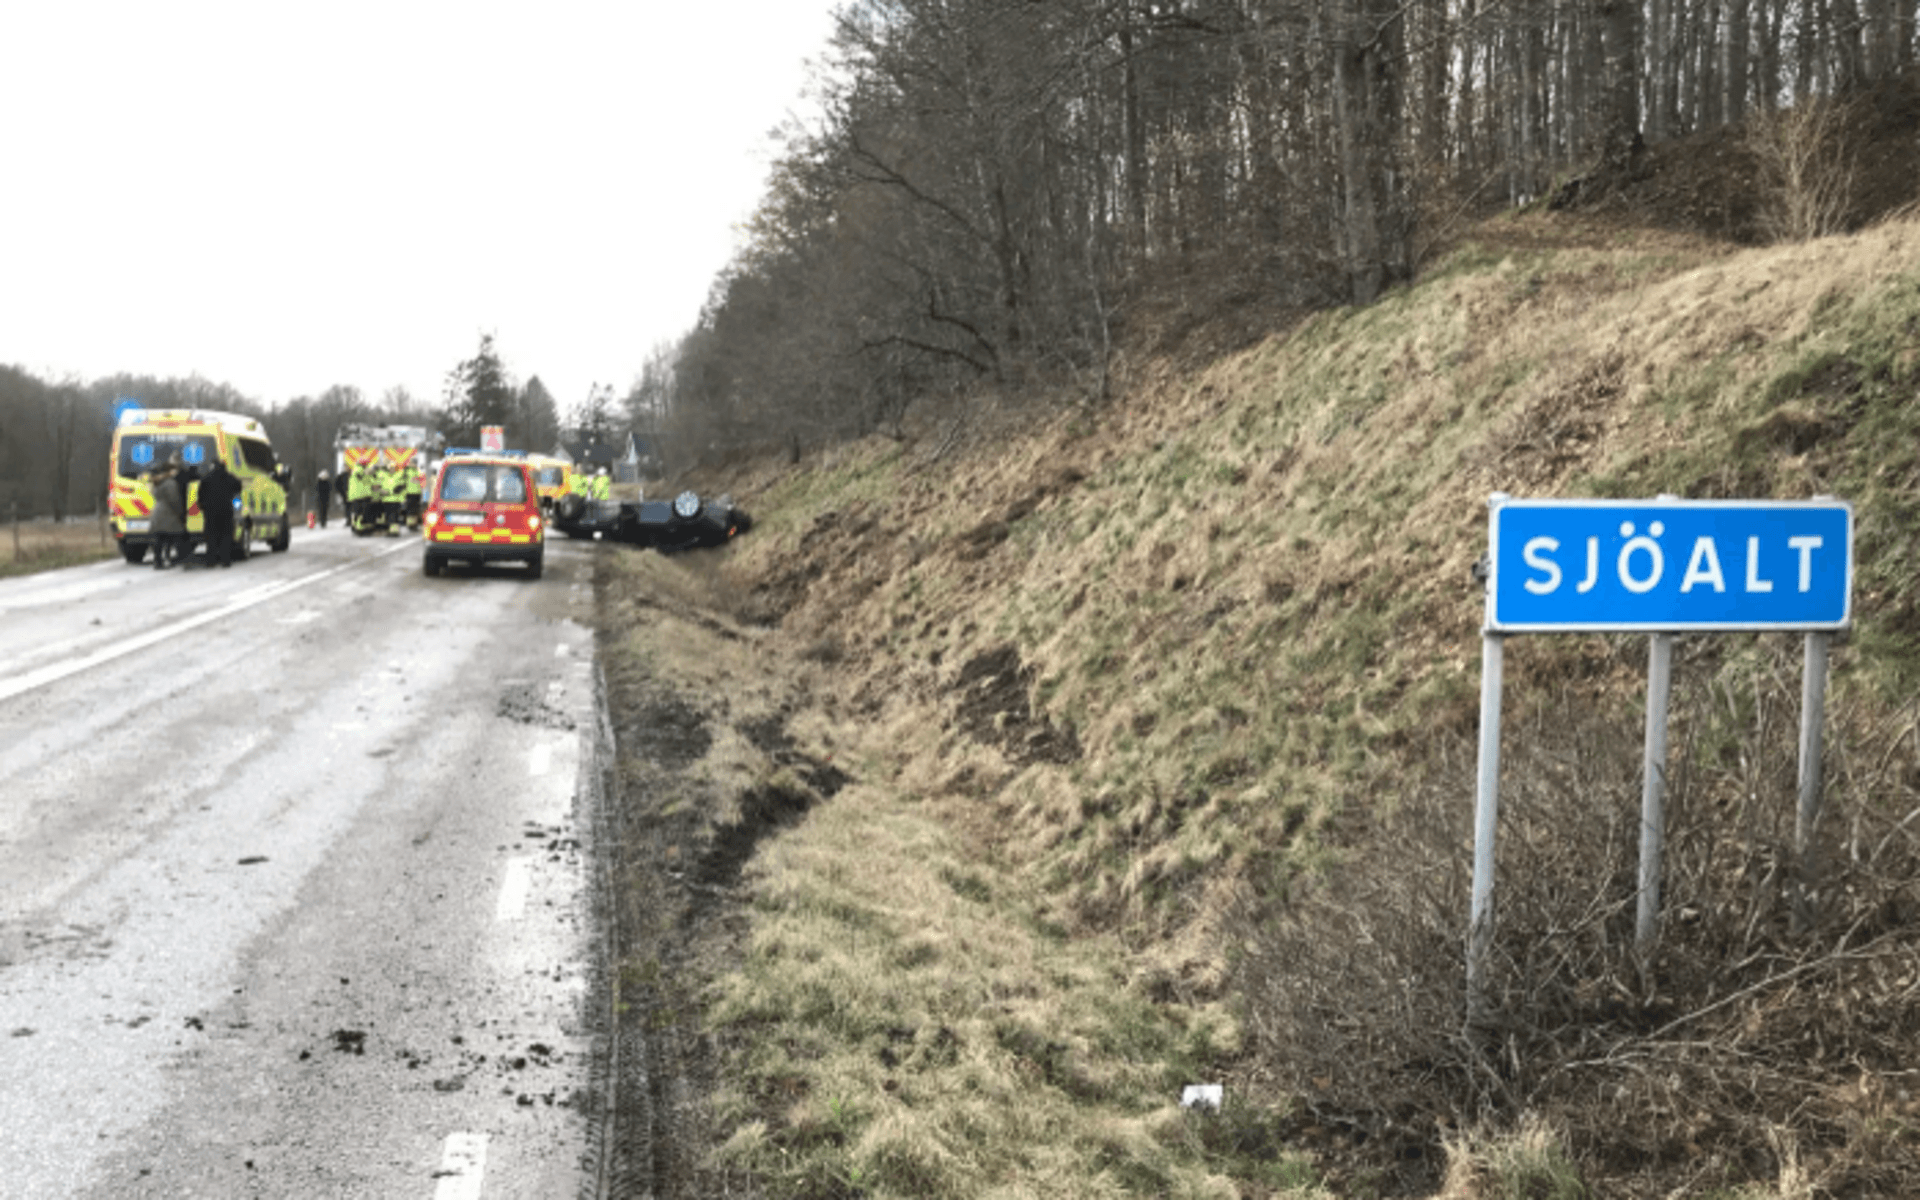 Olyckan 22 februari inträffade på väg 15 i Sjöalt i den sydöstra utkanten av Laholms kommun.